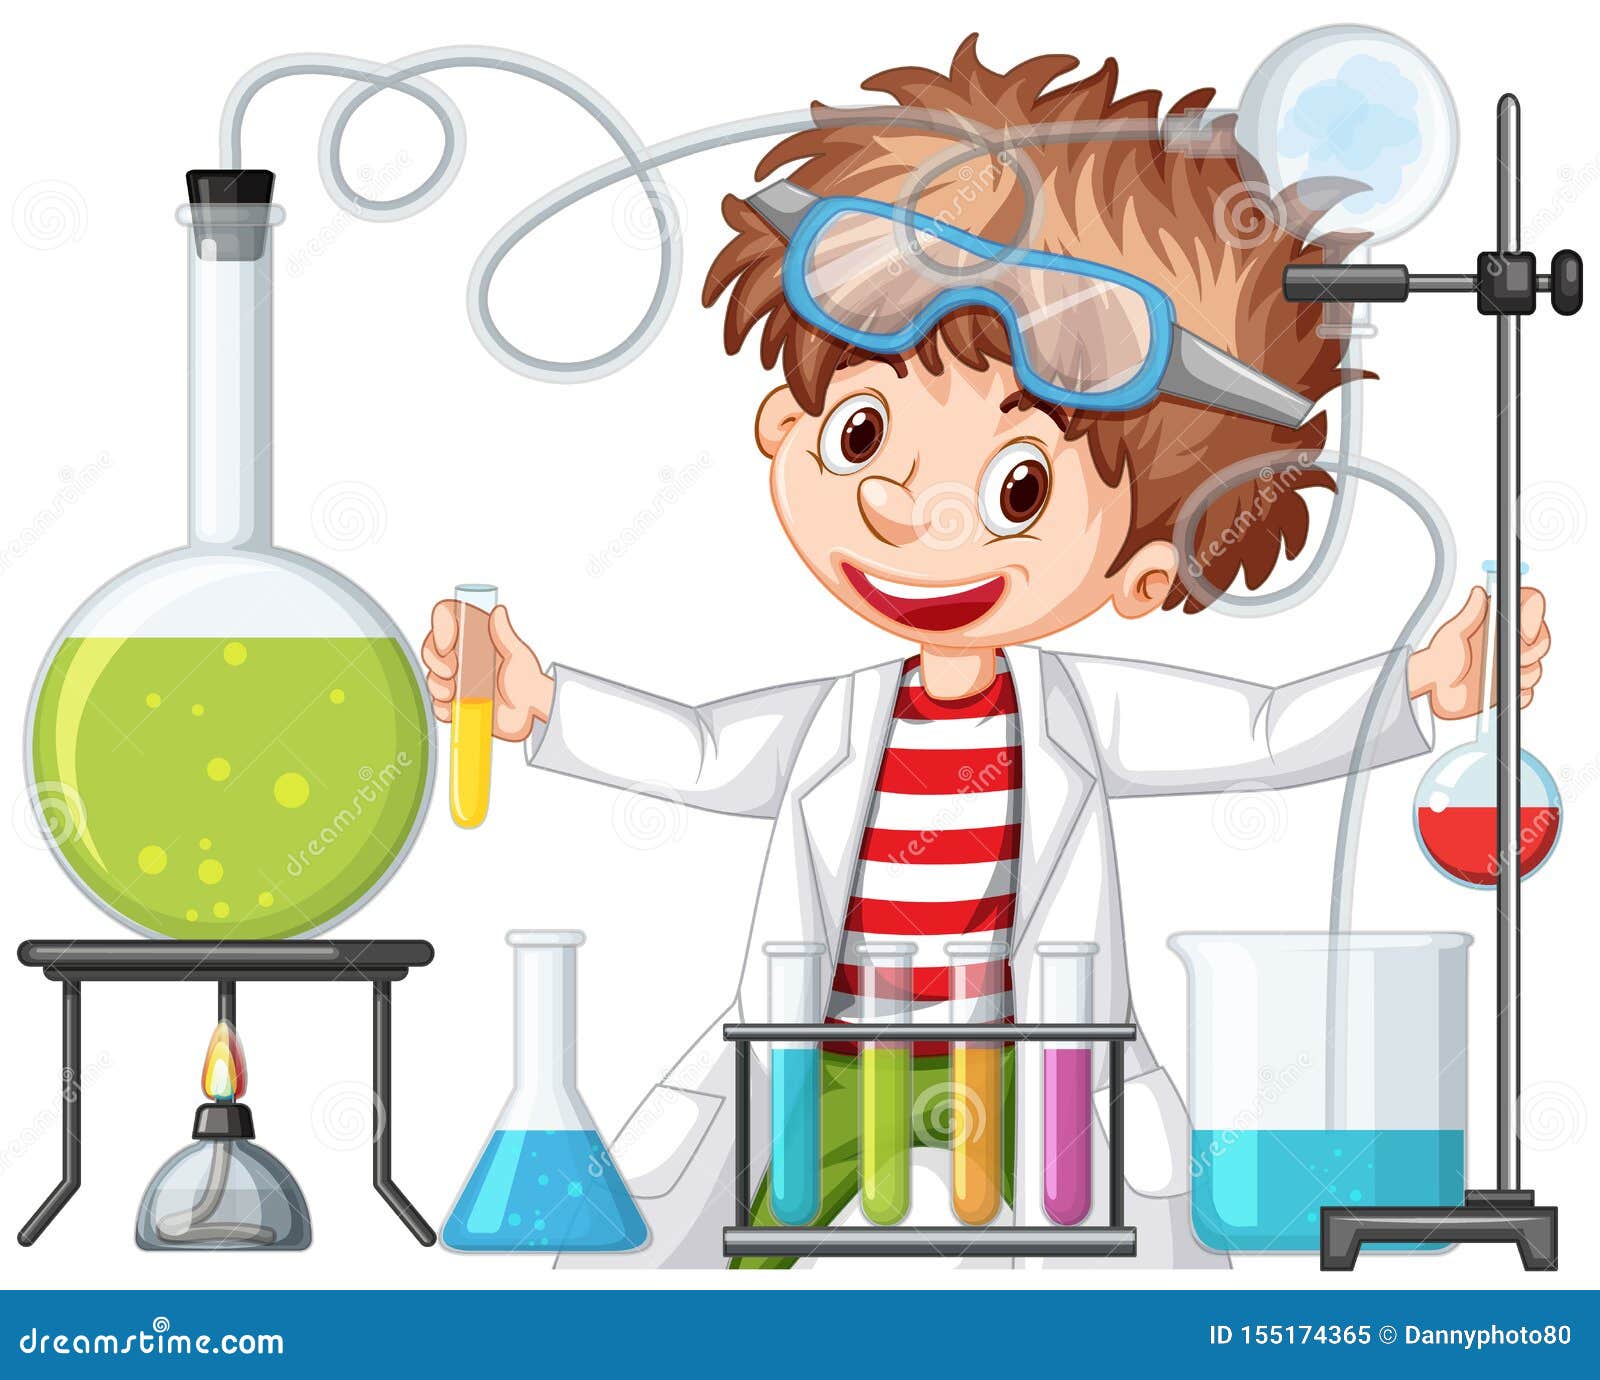 Рамка опыты и эксперименты. Дети химики. Химия опыты для детей. Лаборатория для детей иллюстрация. Химия картинки для детей.